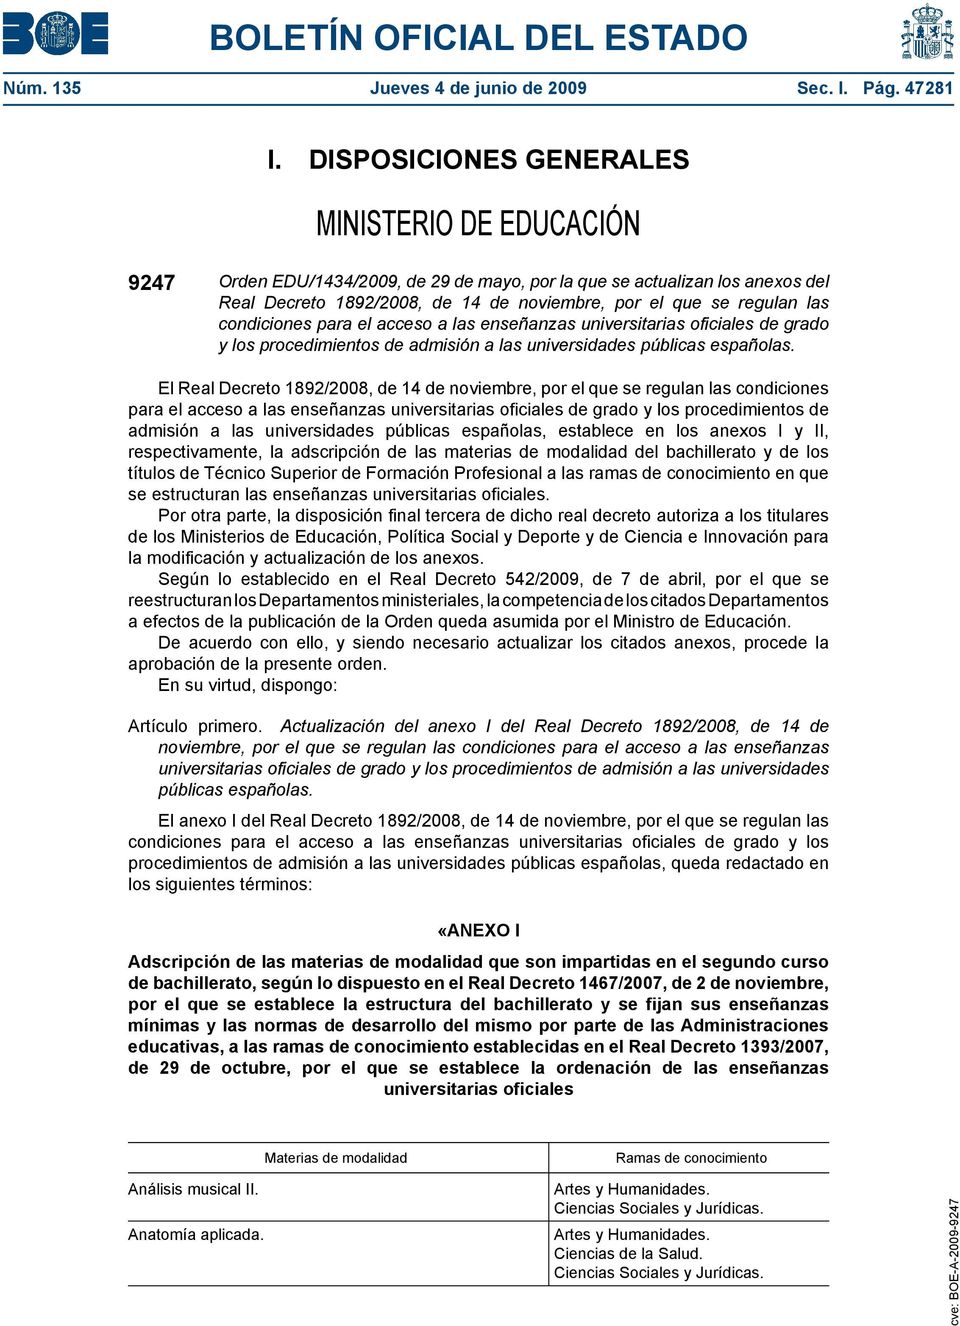 condiciones para el acceso a las enseñanzas universitarias oficiales de grado y los procedimientos de admisión a las universidades públicas españolas.